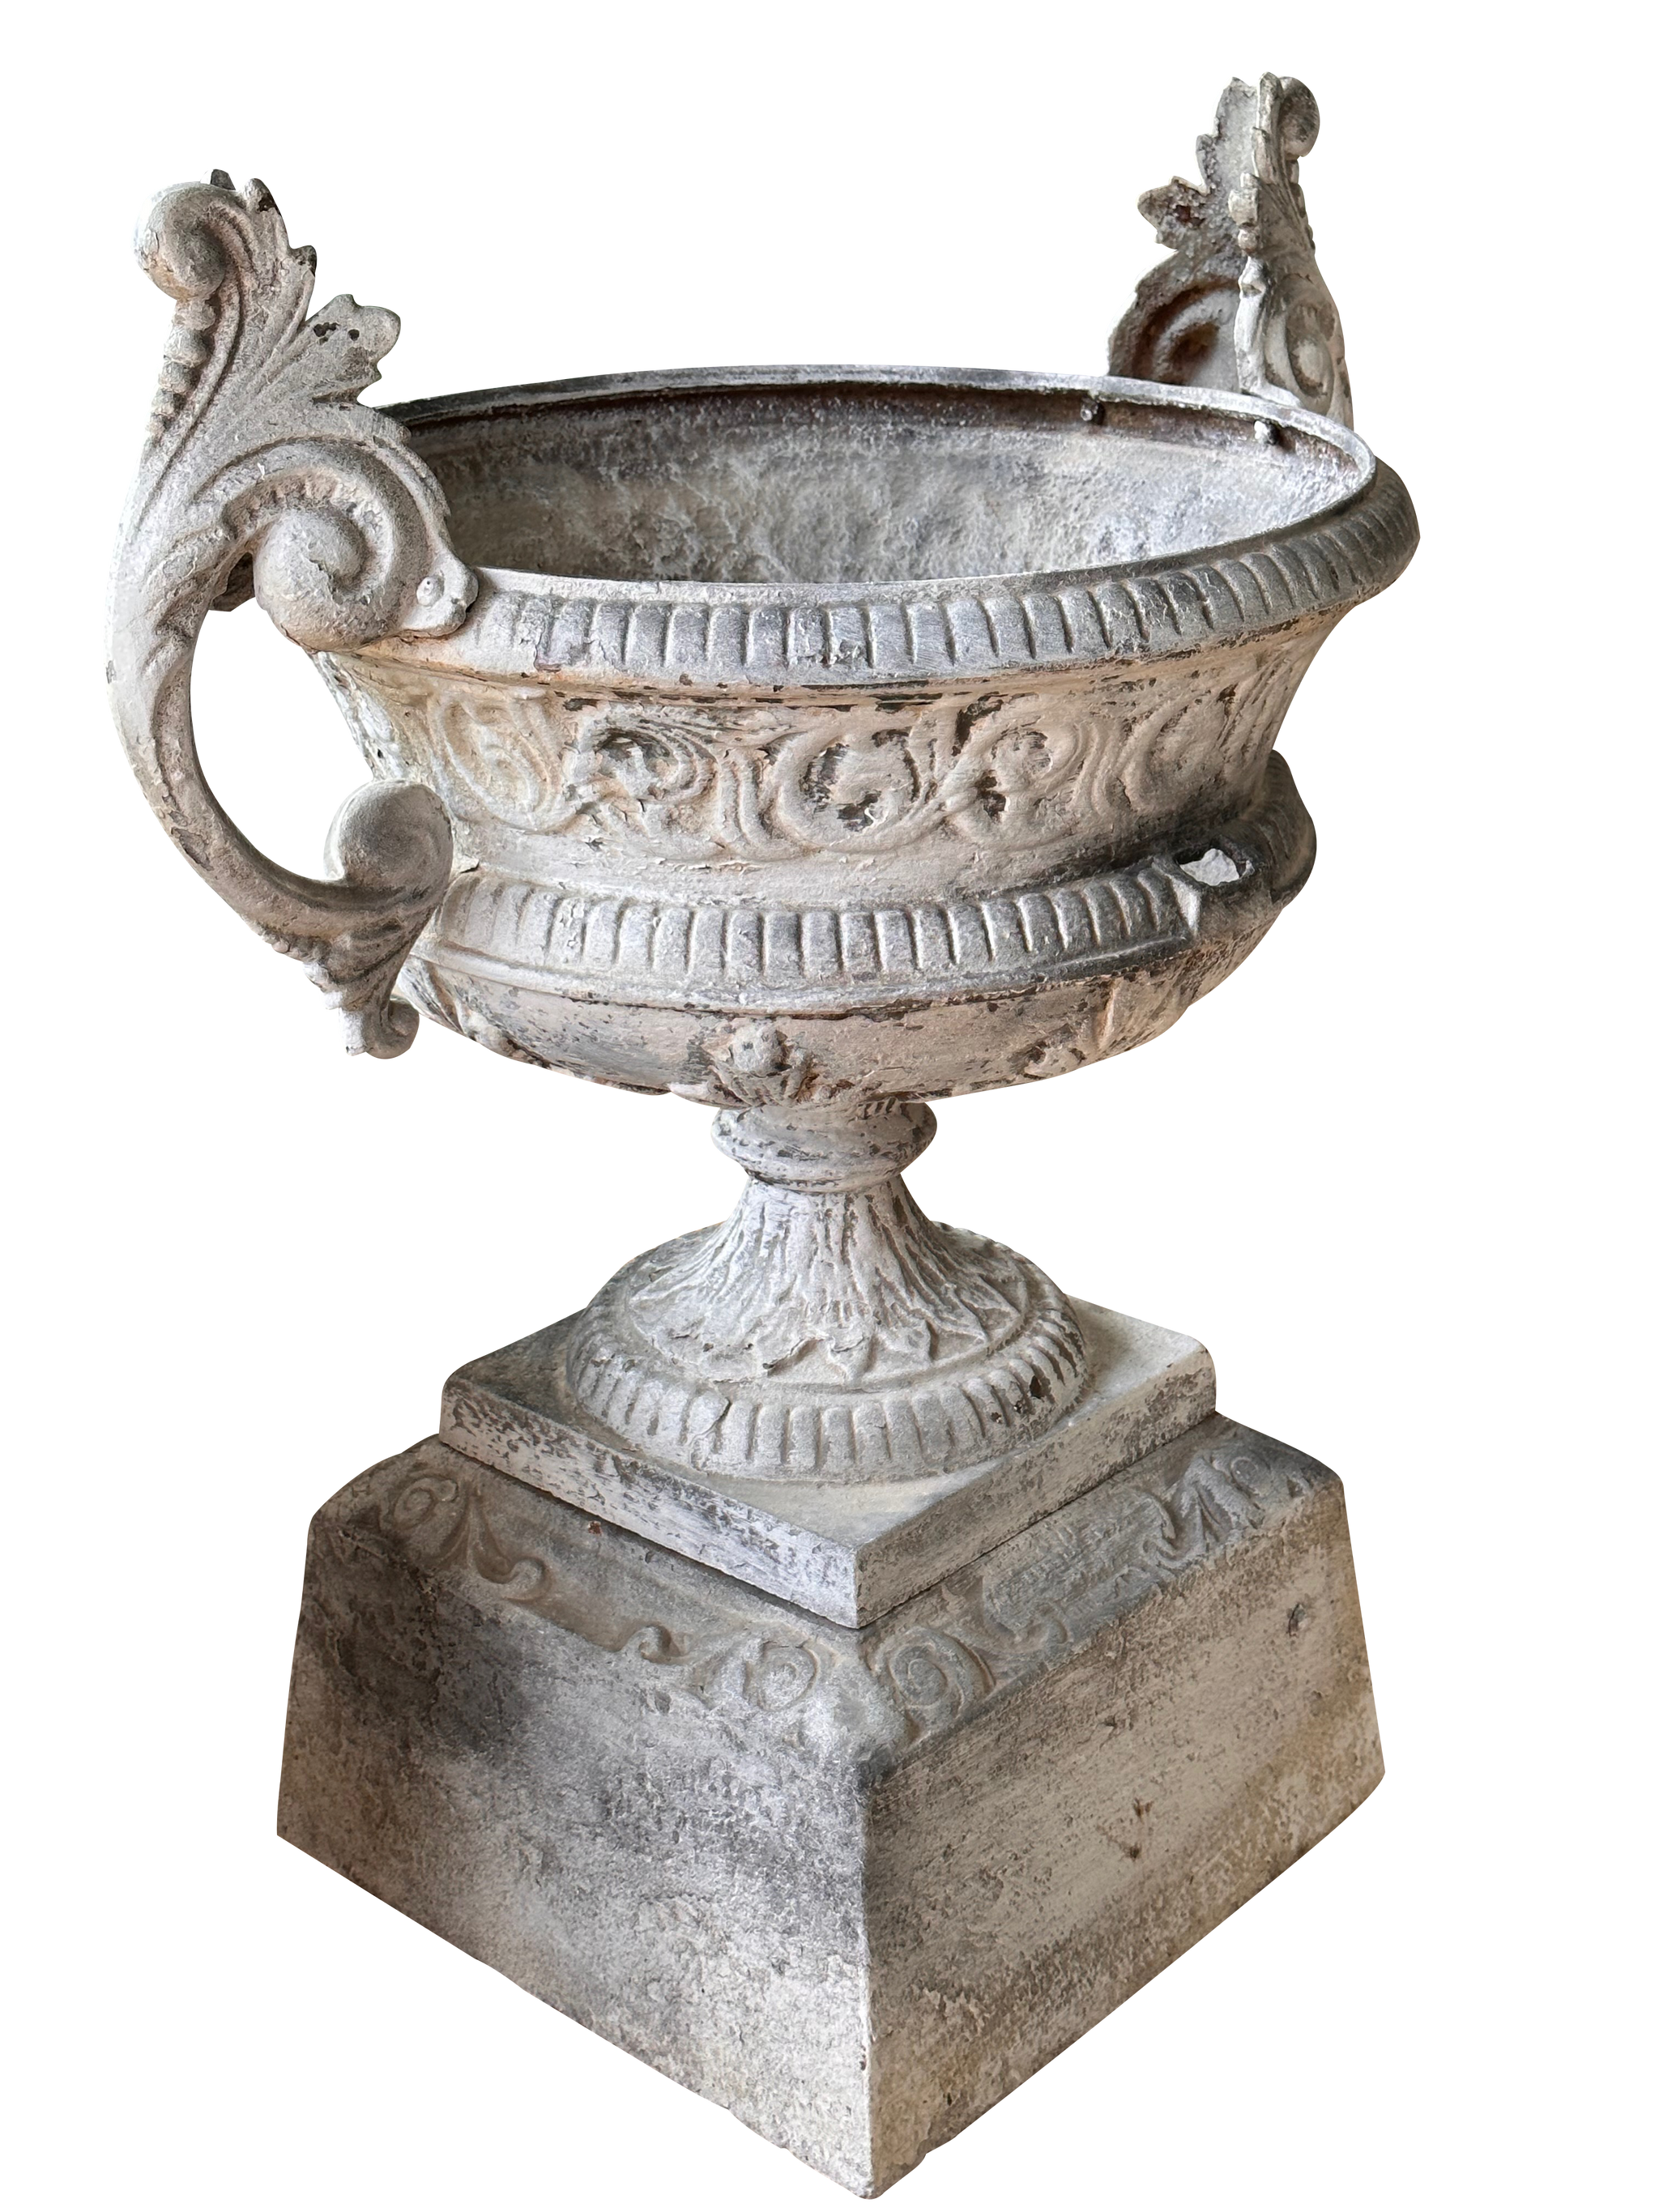 antique silver urns